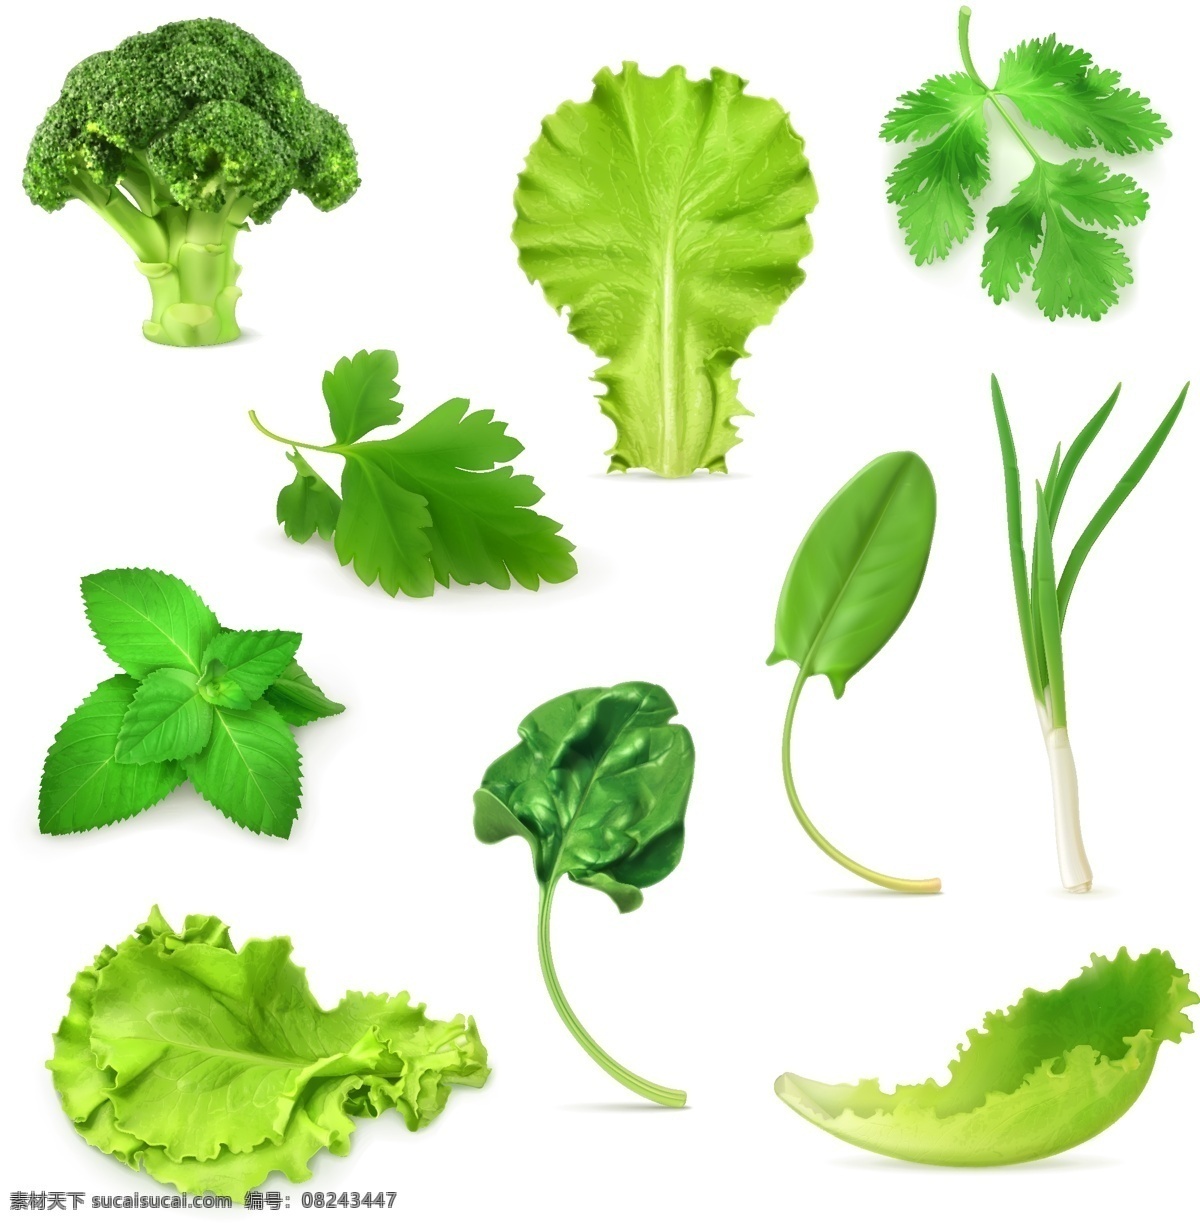 款 绿色 蔬菜 植物 叶片 矢量 绿色植物 西兰花 芹菜 薄荷 菠菜 葱 生菜 绿色蔬菜 文化艺术 绘画书法